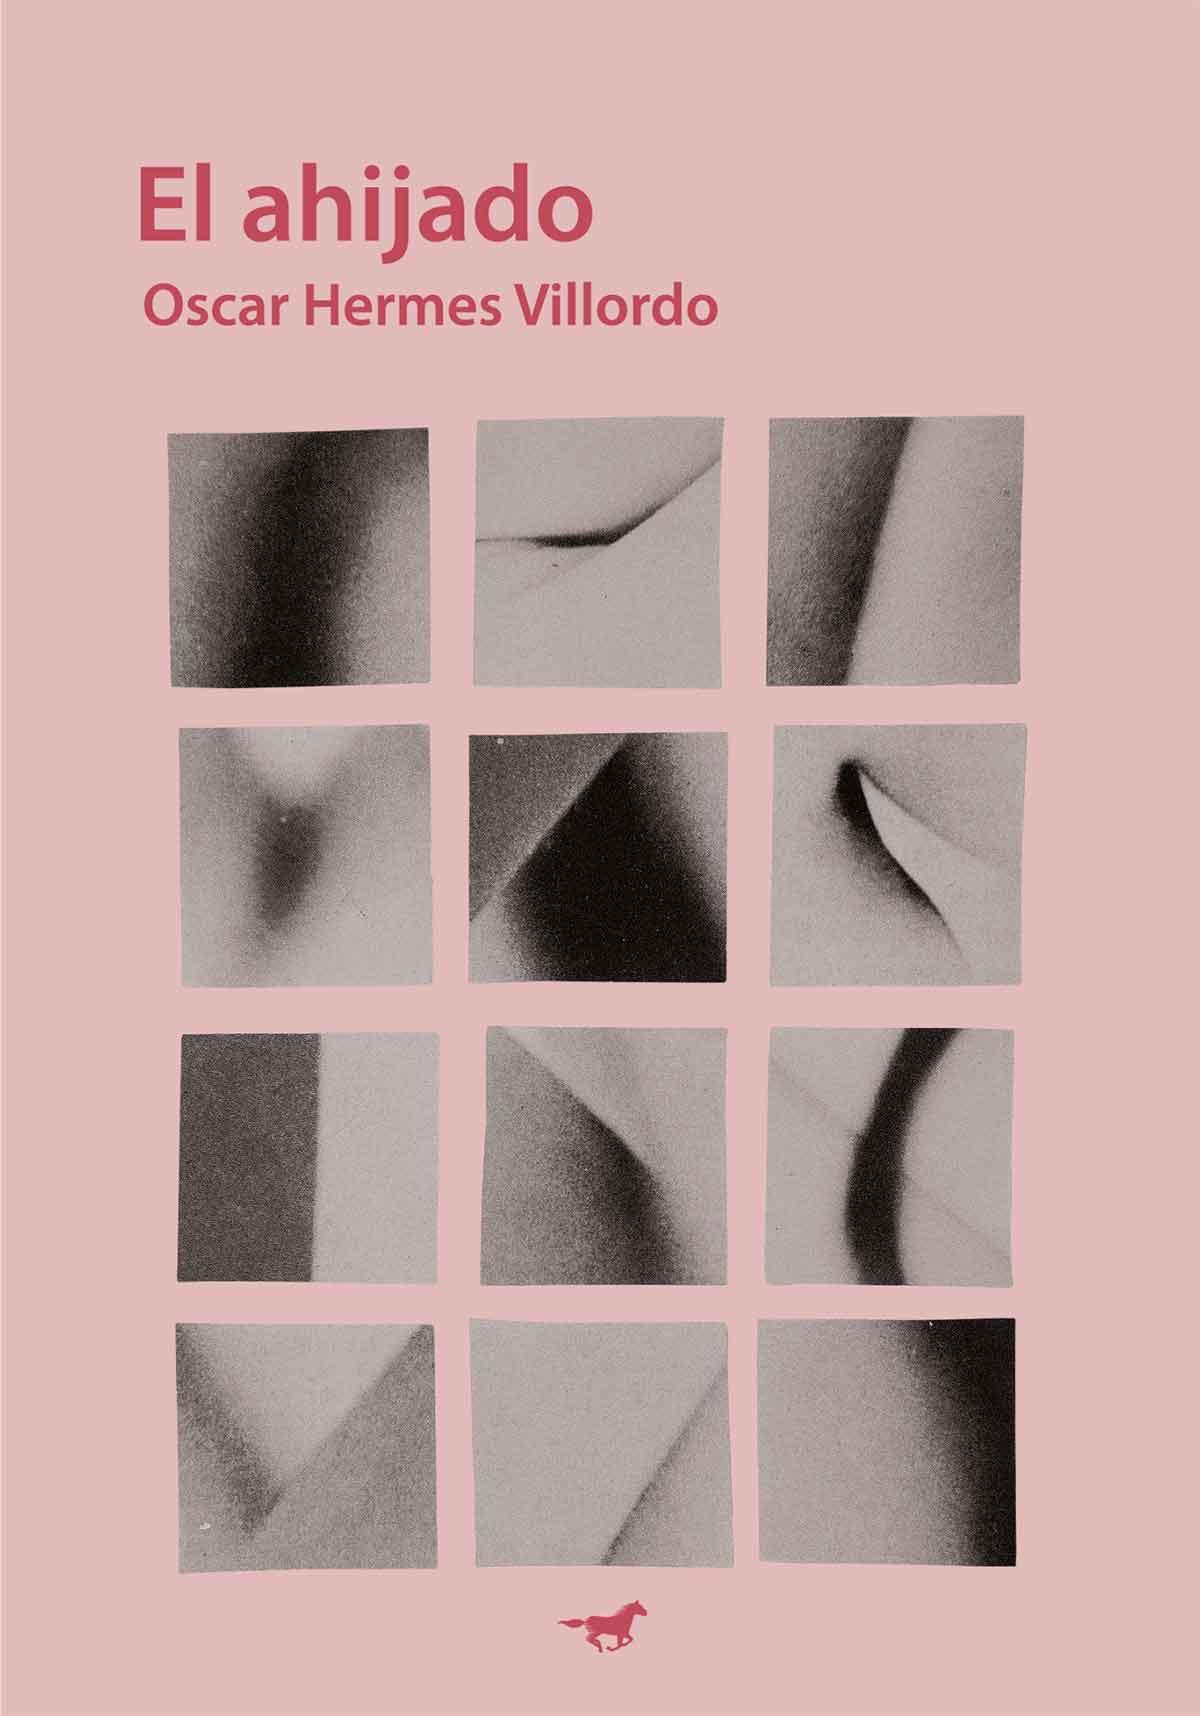 Tapa de "El ahijado", libro de Oscar Hermes Villordo